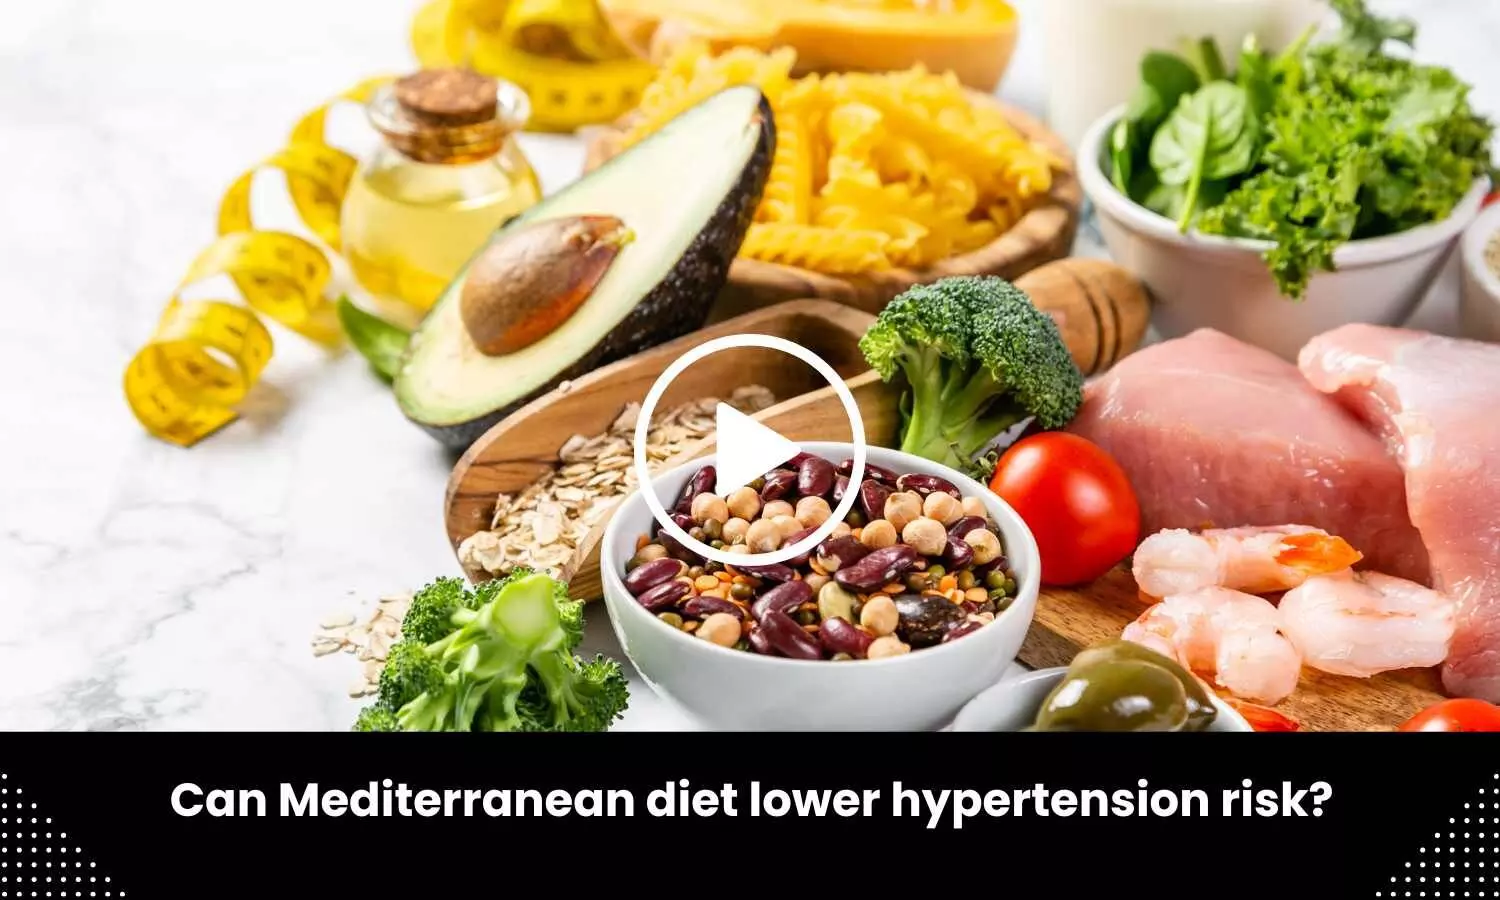 Can Mediterranean diet lower hypertension risk?